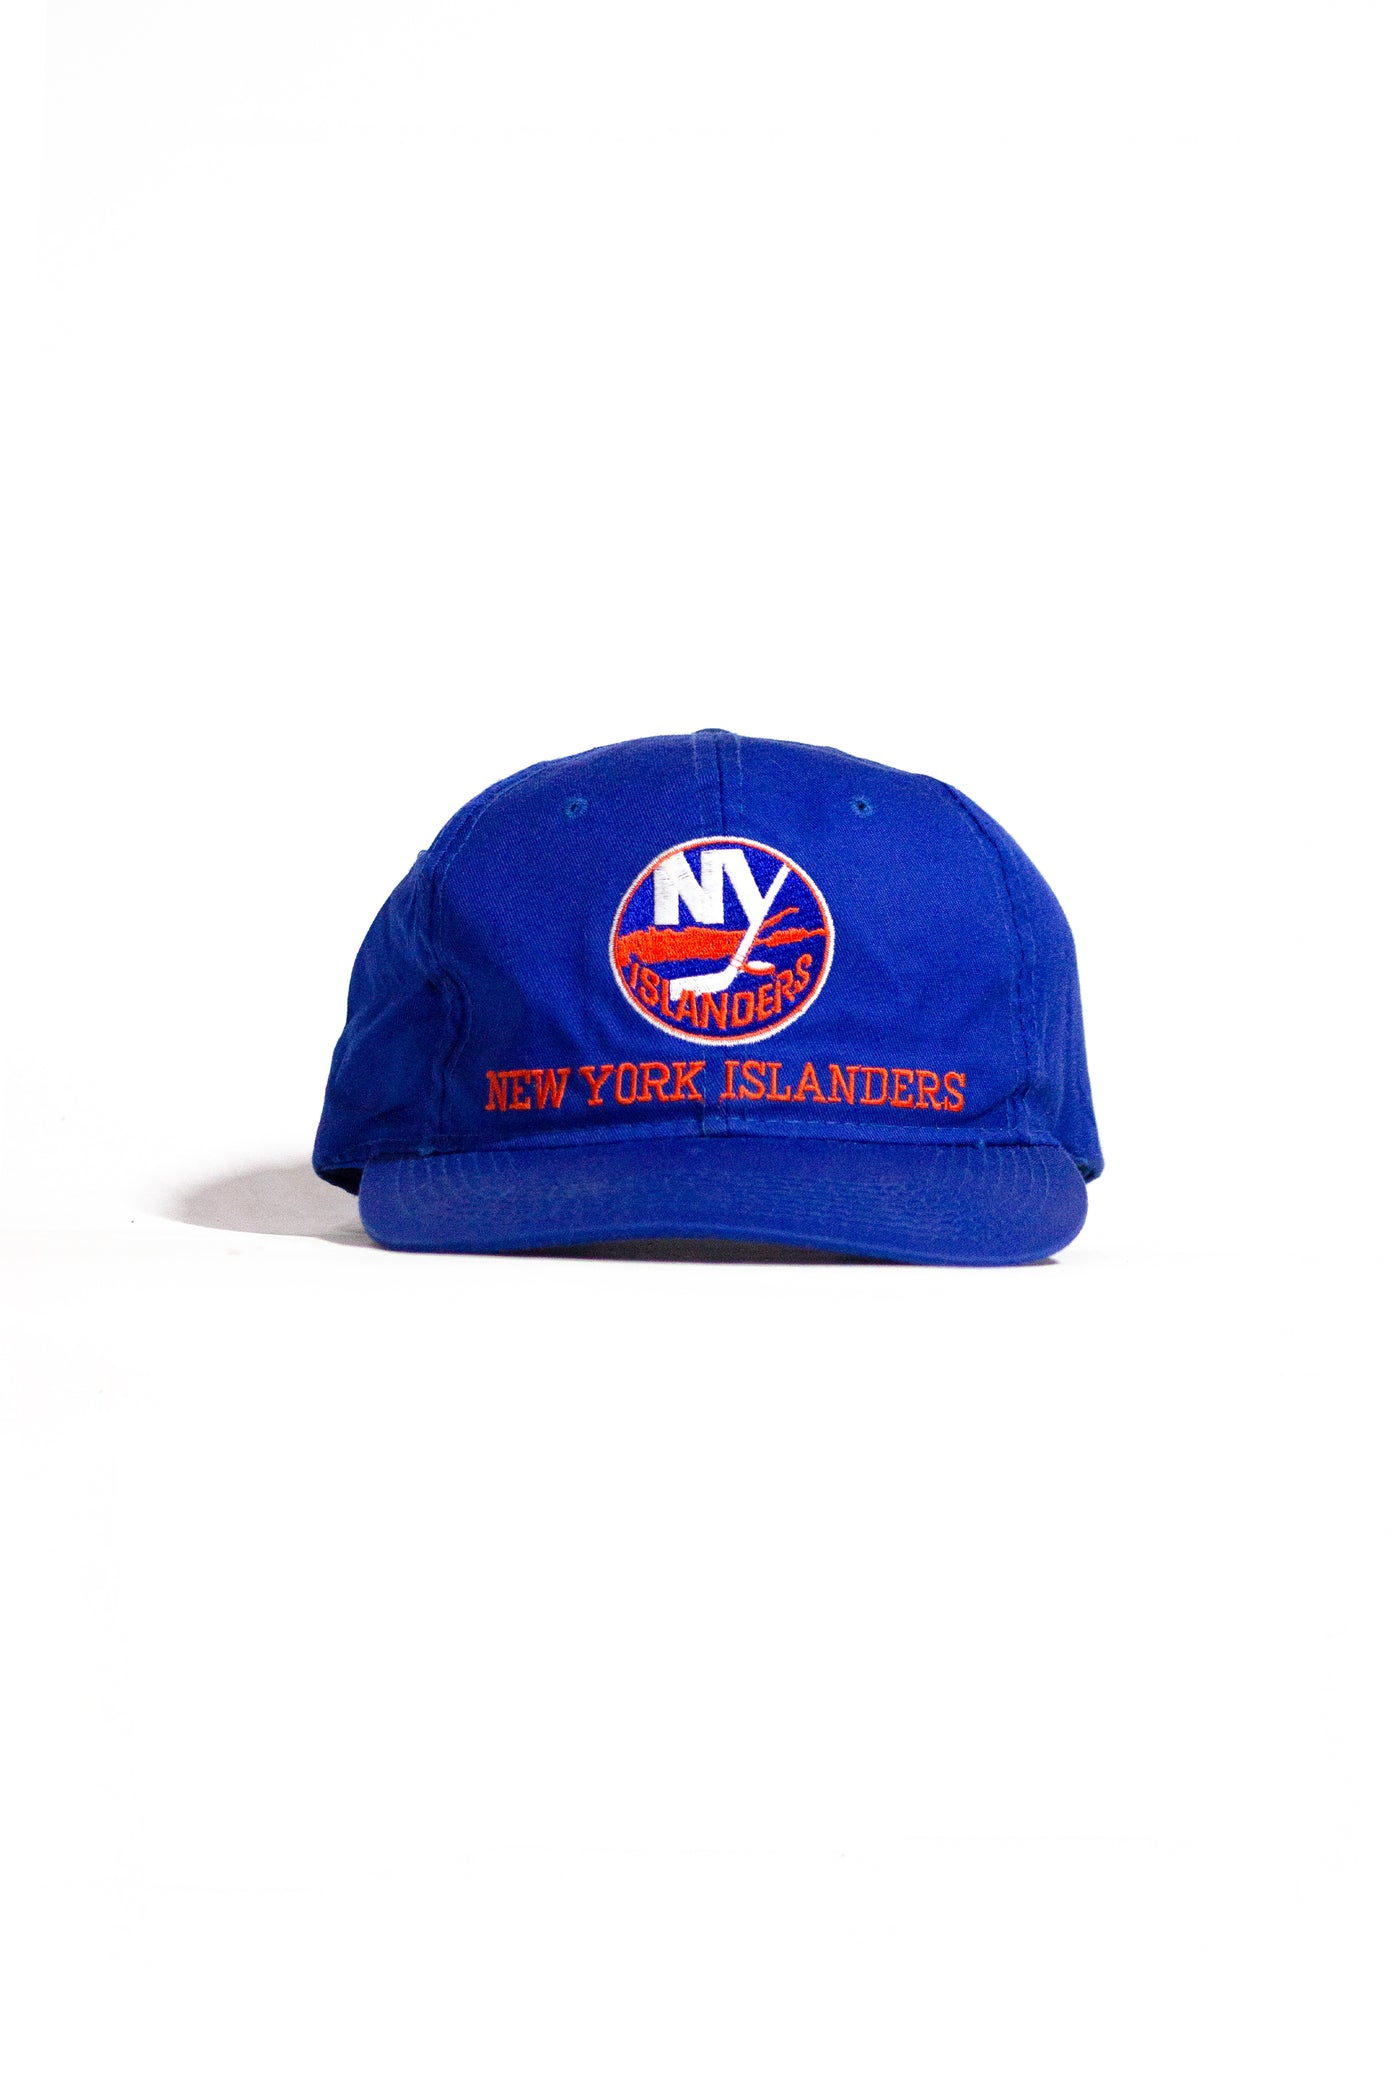 Vintage 90s New York Islanders Snapback